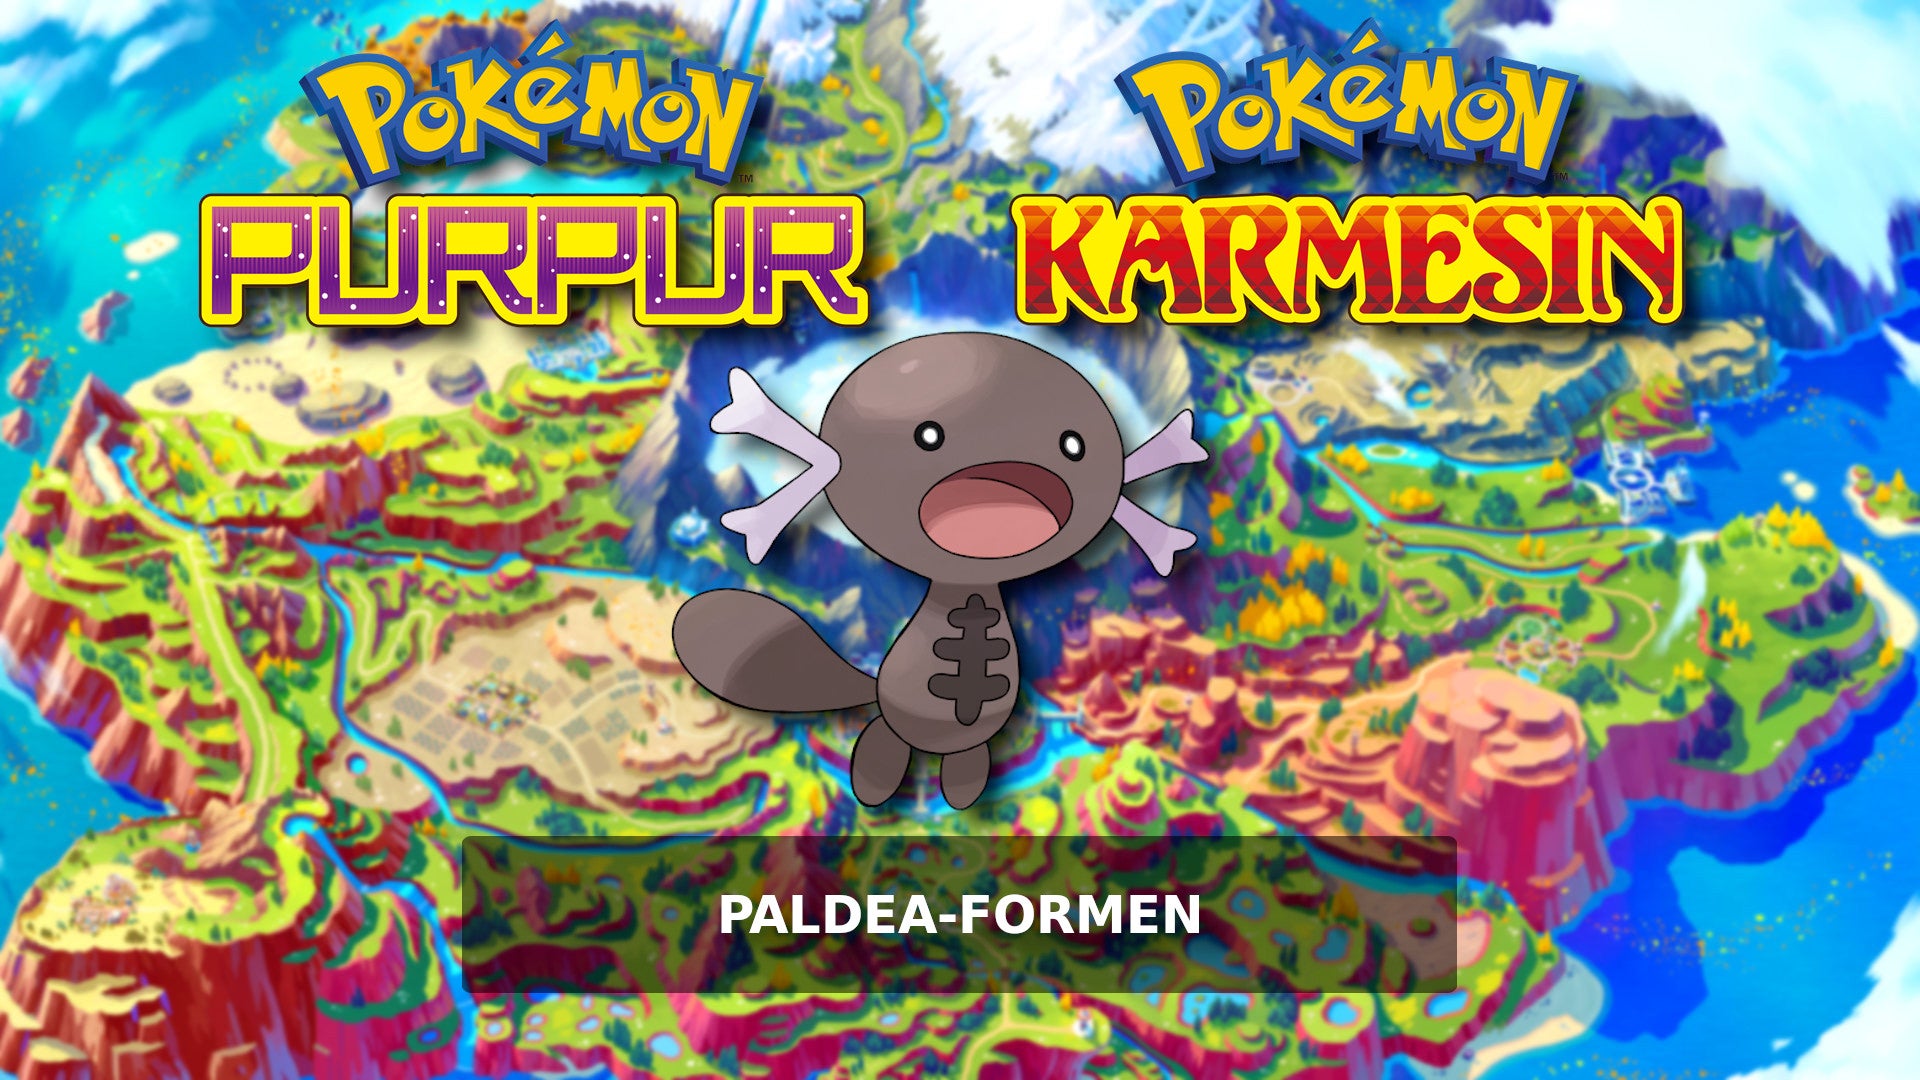 Bilder zu Pokémon Karmesin und Purpur Paldea-Formen - Diese bekannten Pokémon gibt’s im neuen Look